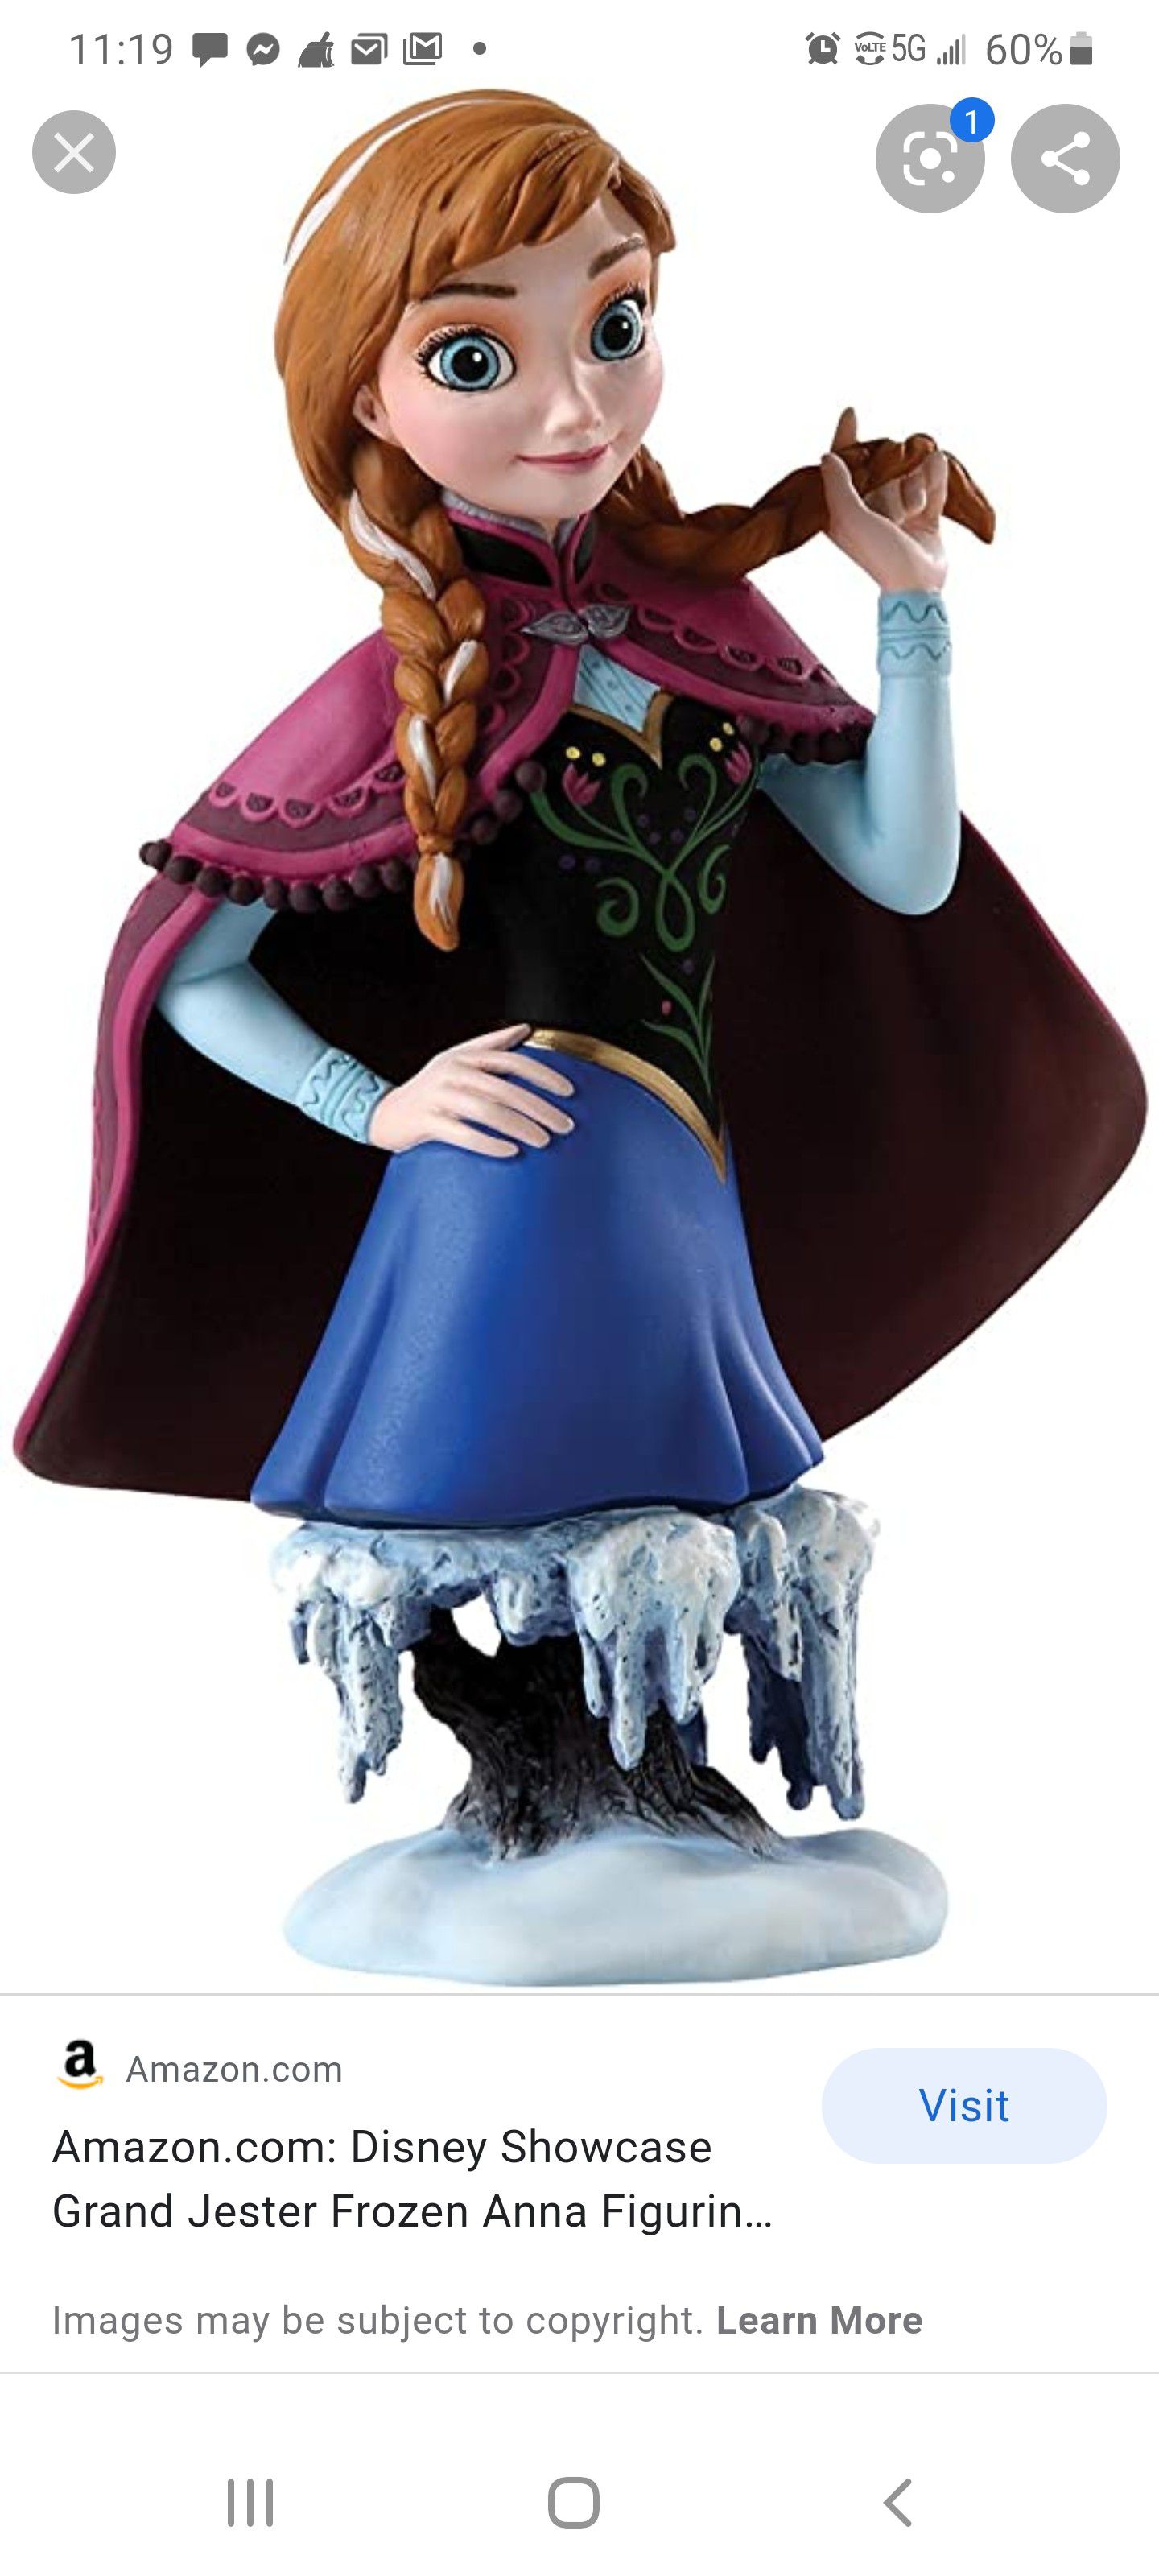 Disney Showcase Grand Jester Frozen Anna Figurine